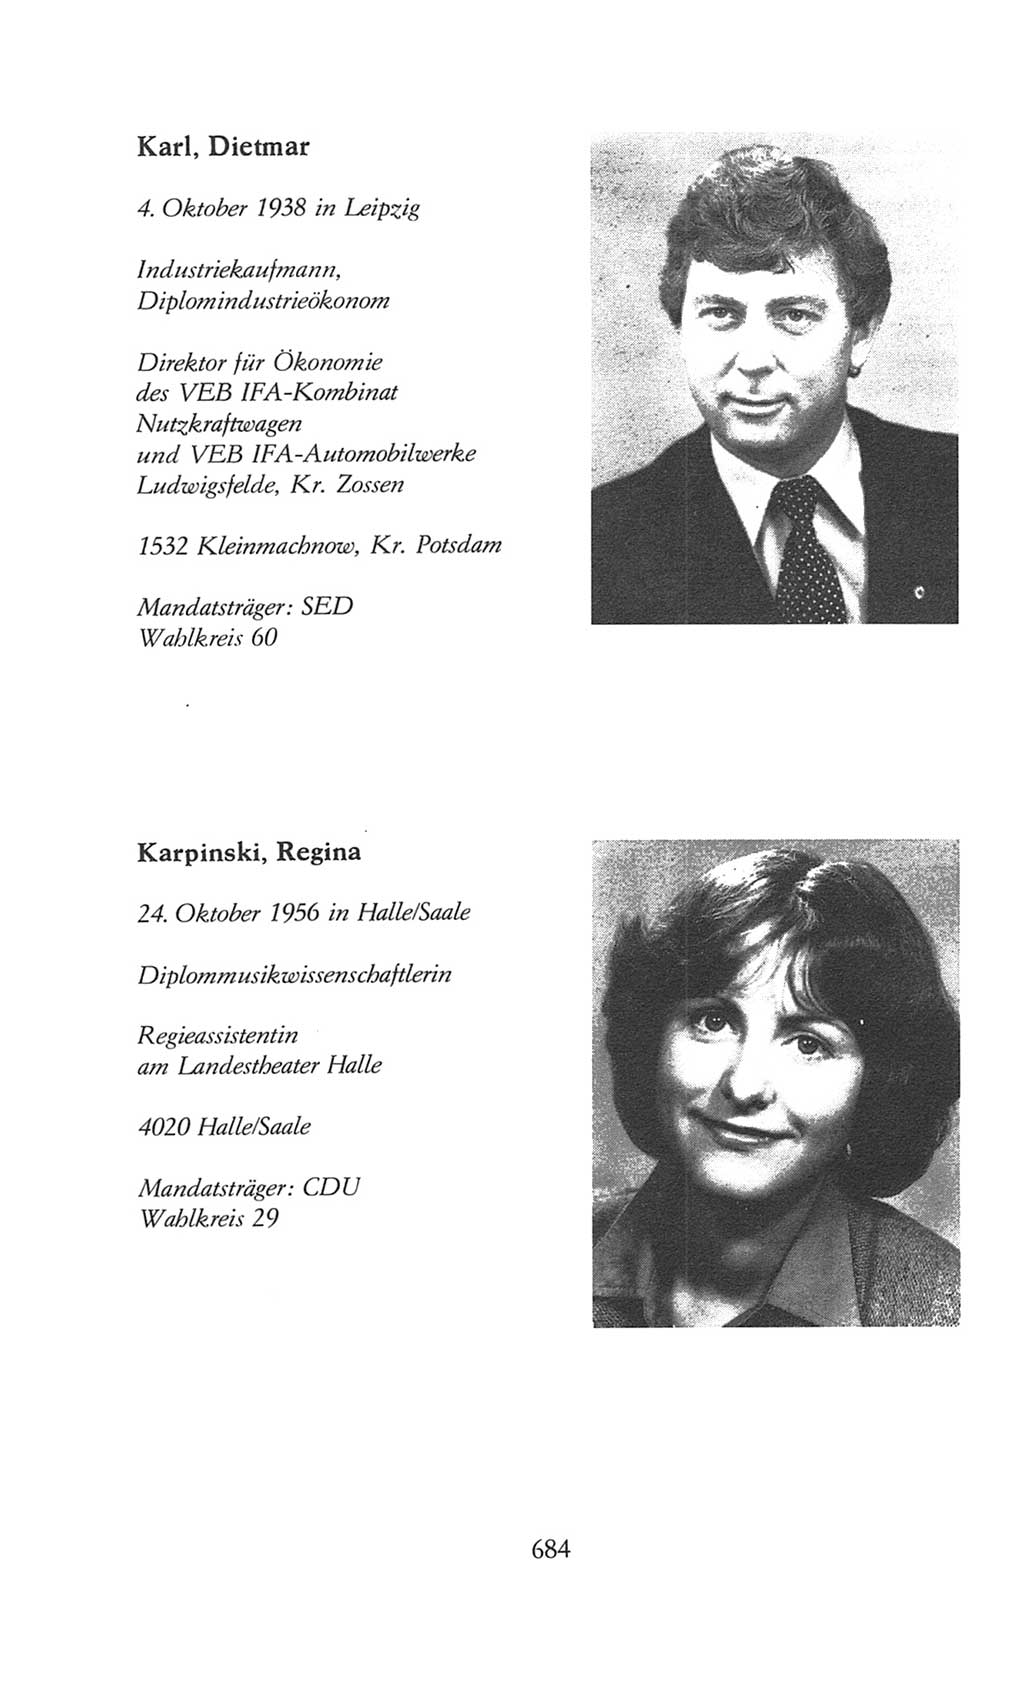 Volkskammer (VK) der Deutschen Demokratischen Republik (DDR), 8. Wahlperiode 1981-1986, Seite 684 (VK. DDR 8. WP. 1981-1986, S. 684)